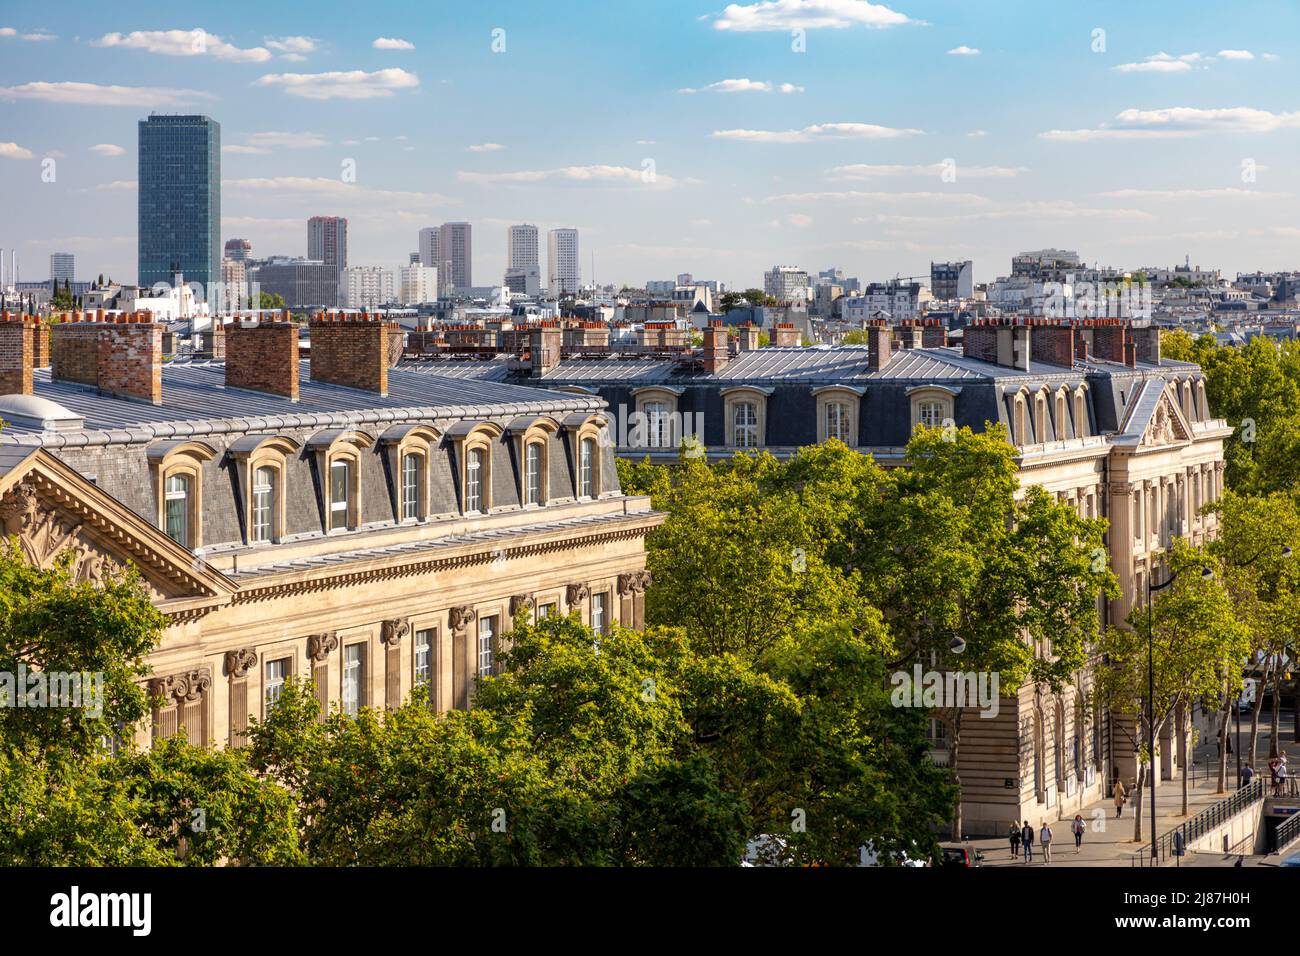 Vue surélevée sur les bâtiments du 4th arrondissement, Paris, Ice-de-France, France Banque D'Images